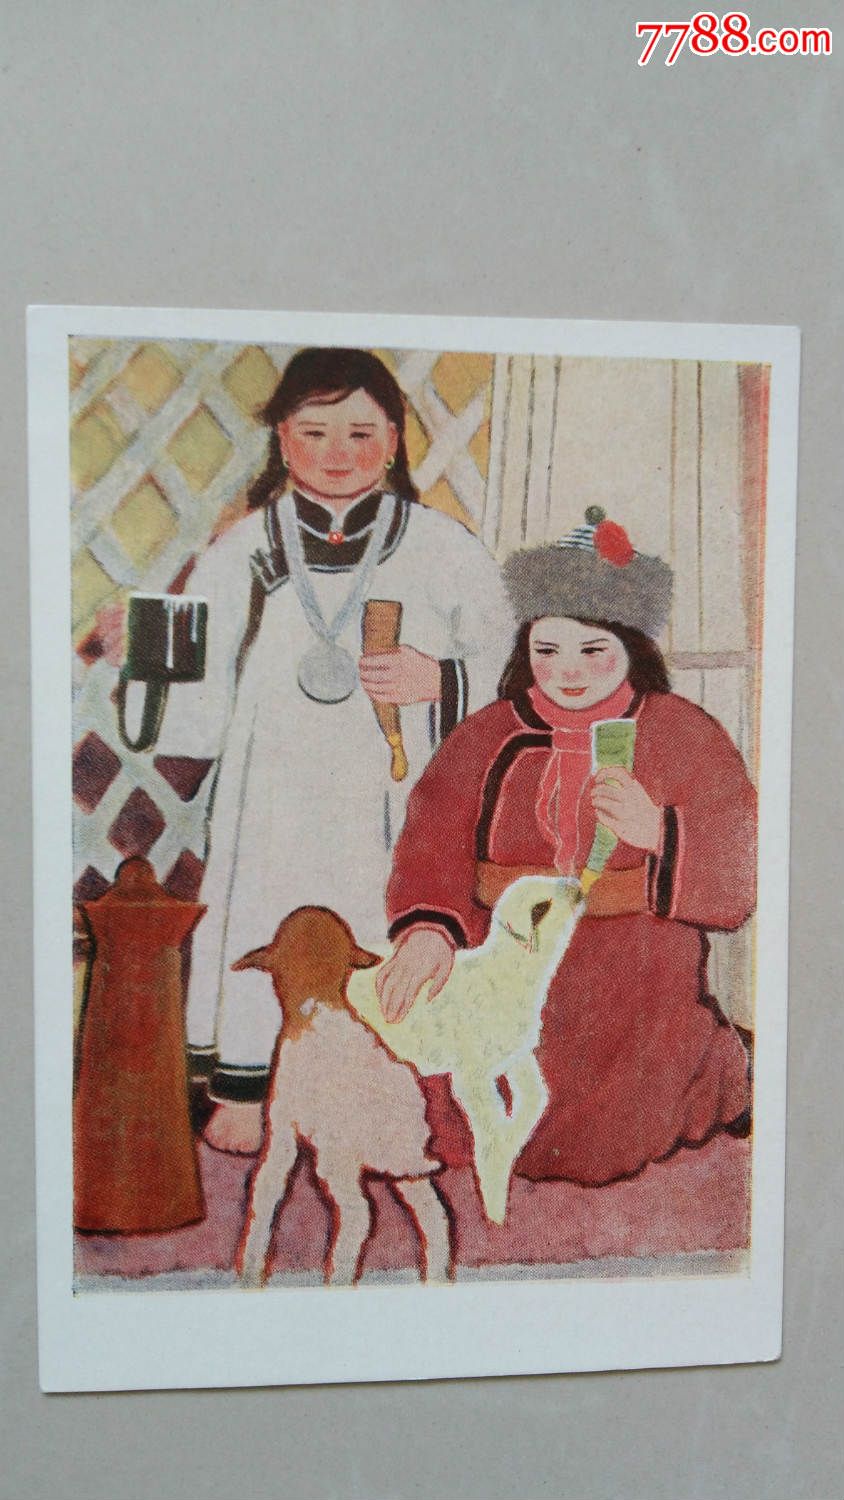 苏联版中国事物《蒙古族妇女》-价格:50元-se